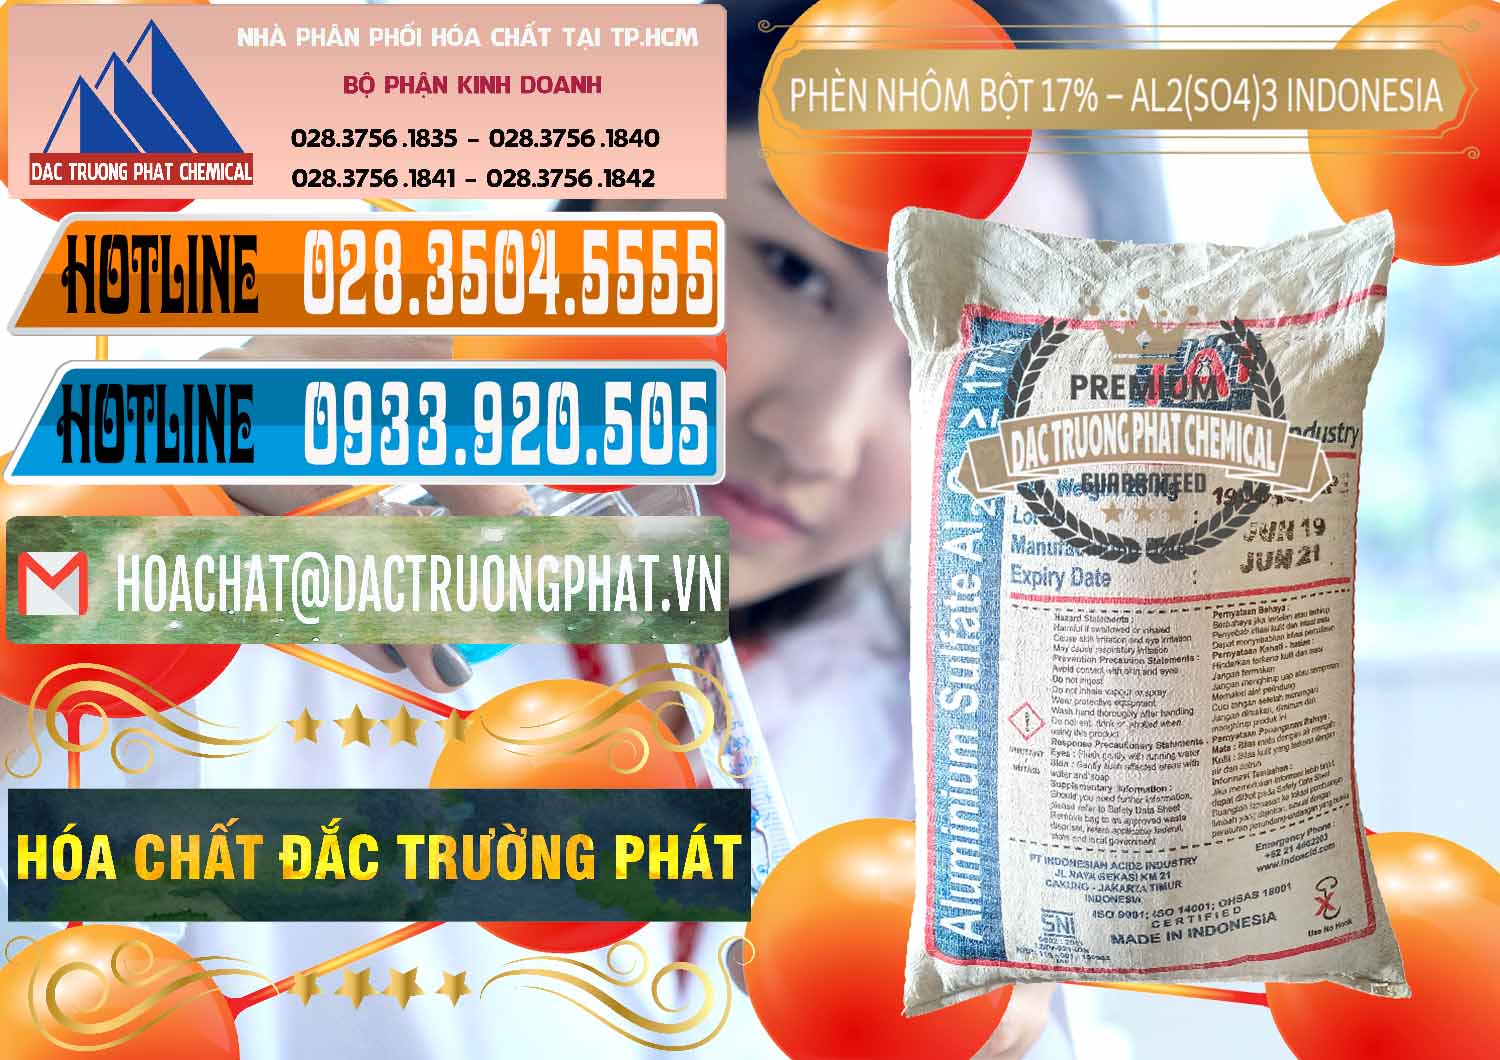 Nơi chuyên cung ứng & bán Phèn Nhôm Bột - Al2(SO4)3 17% bao 25kg Indonesia - 0114 - Nhà phân phối - kinh doanh hóa chất tại TP.HCM - stmp.net